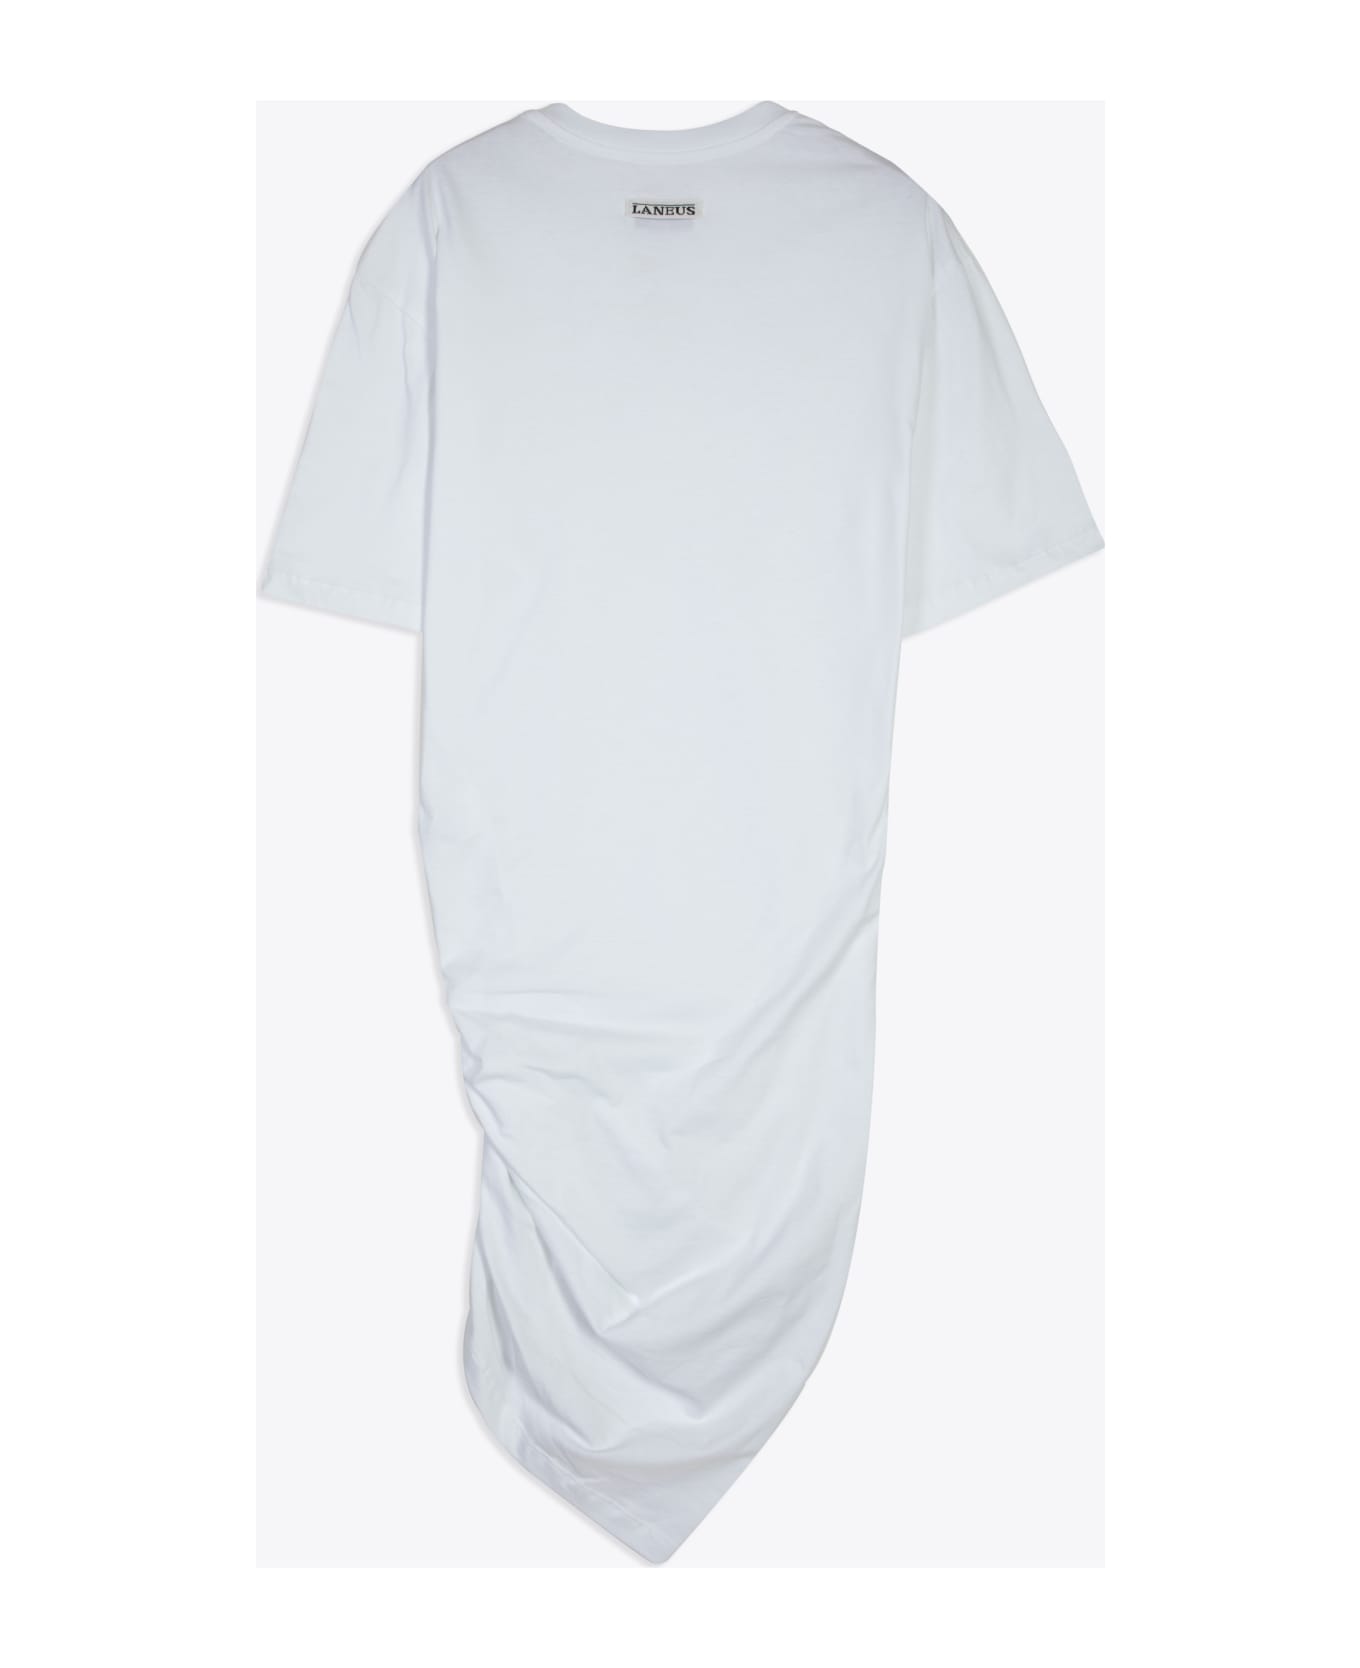 Laneus Jersey Dress Woman White cotton short dress with asymmetric drapery - Jersey Dress - Bianco